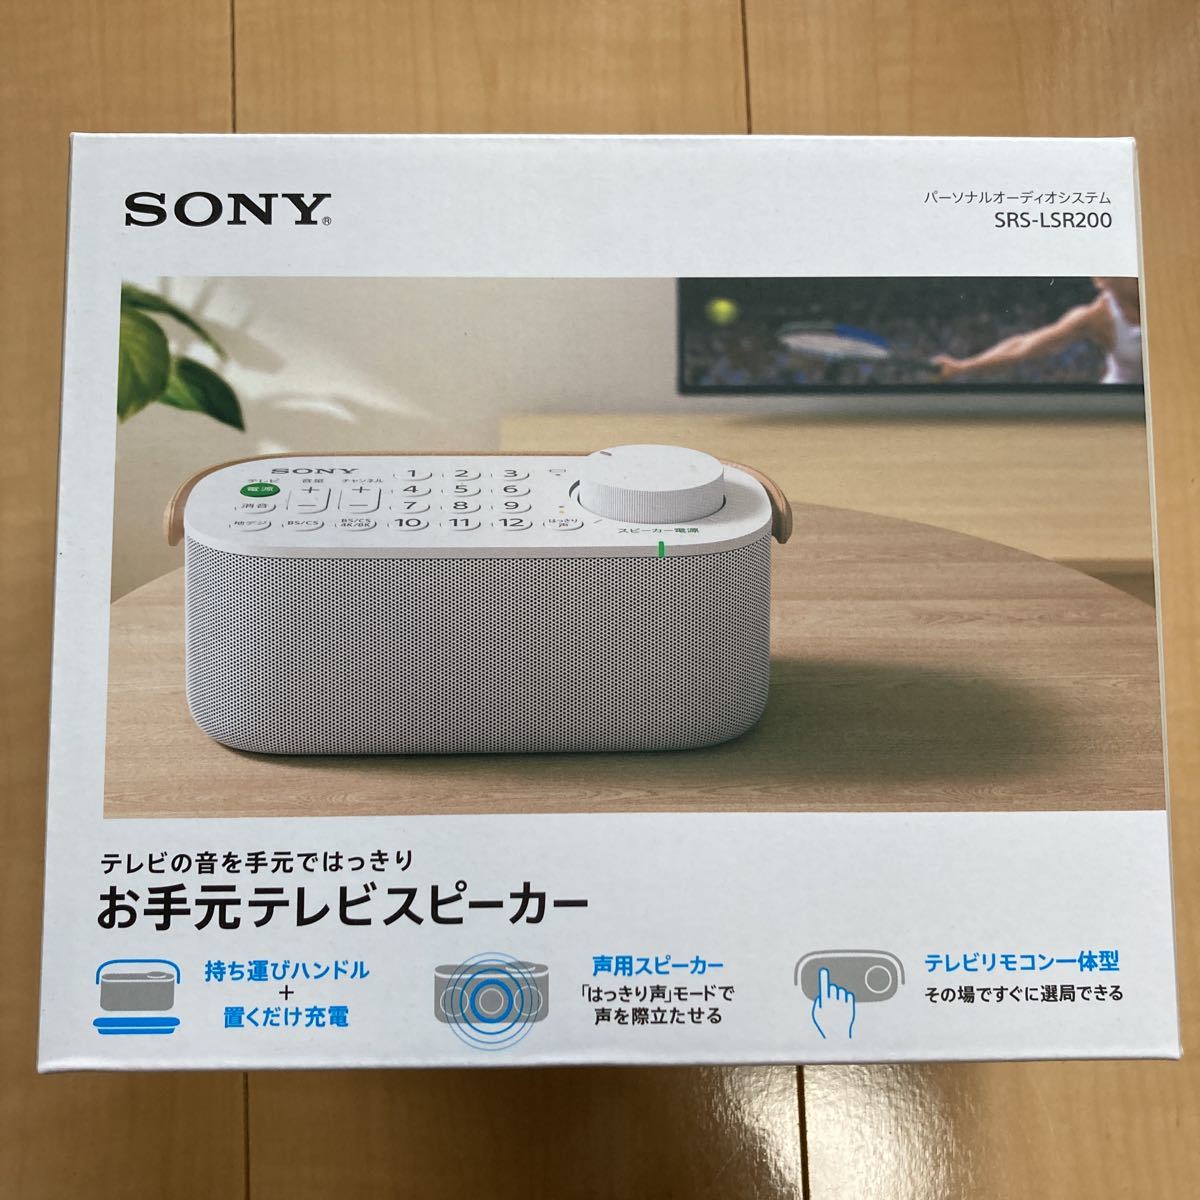 新品未開封 SRS-LSR200SONY お手元テレビスピーカー ワイヤレススピーカー ソニー